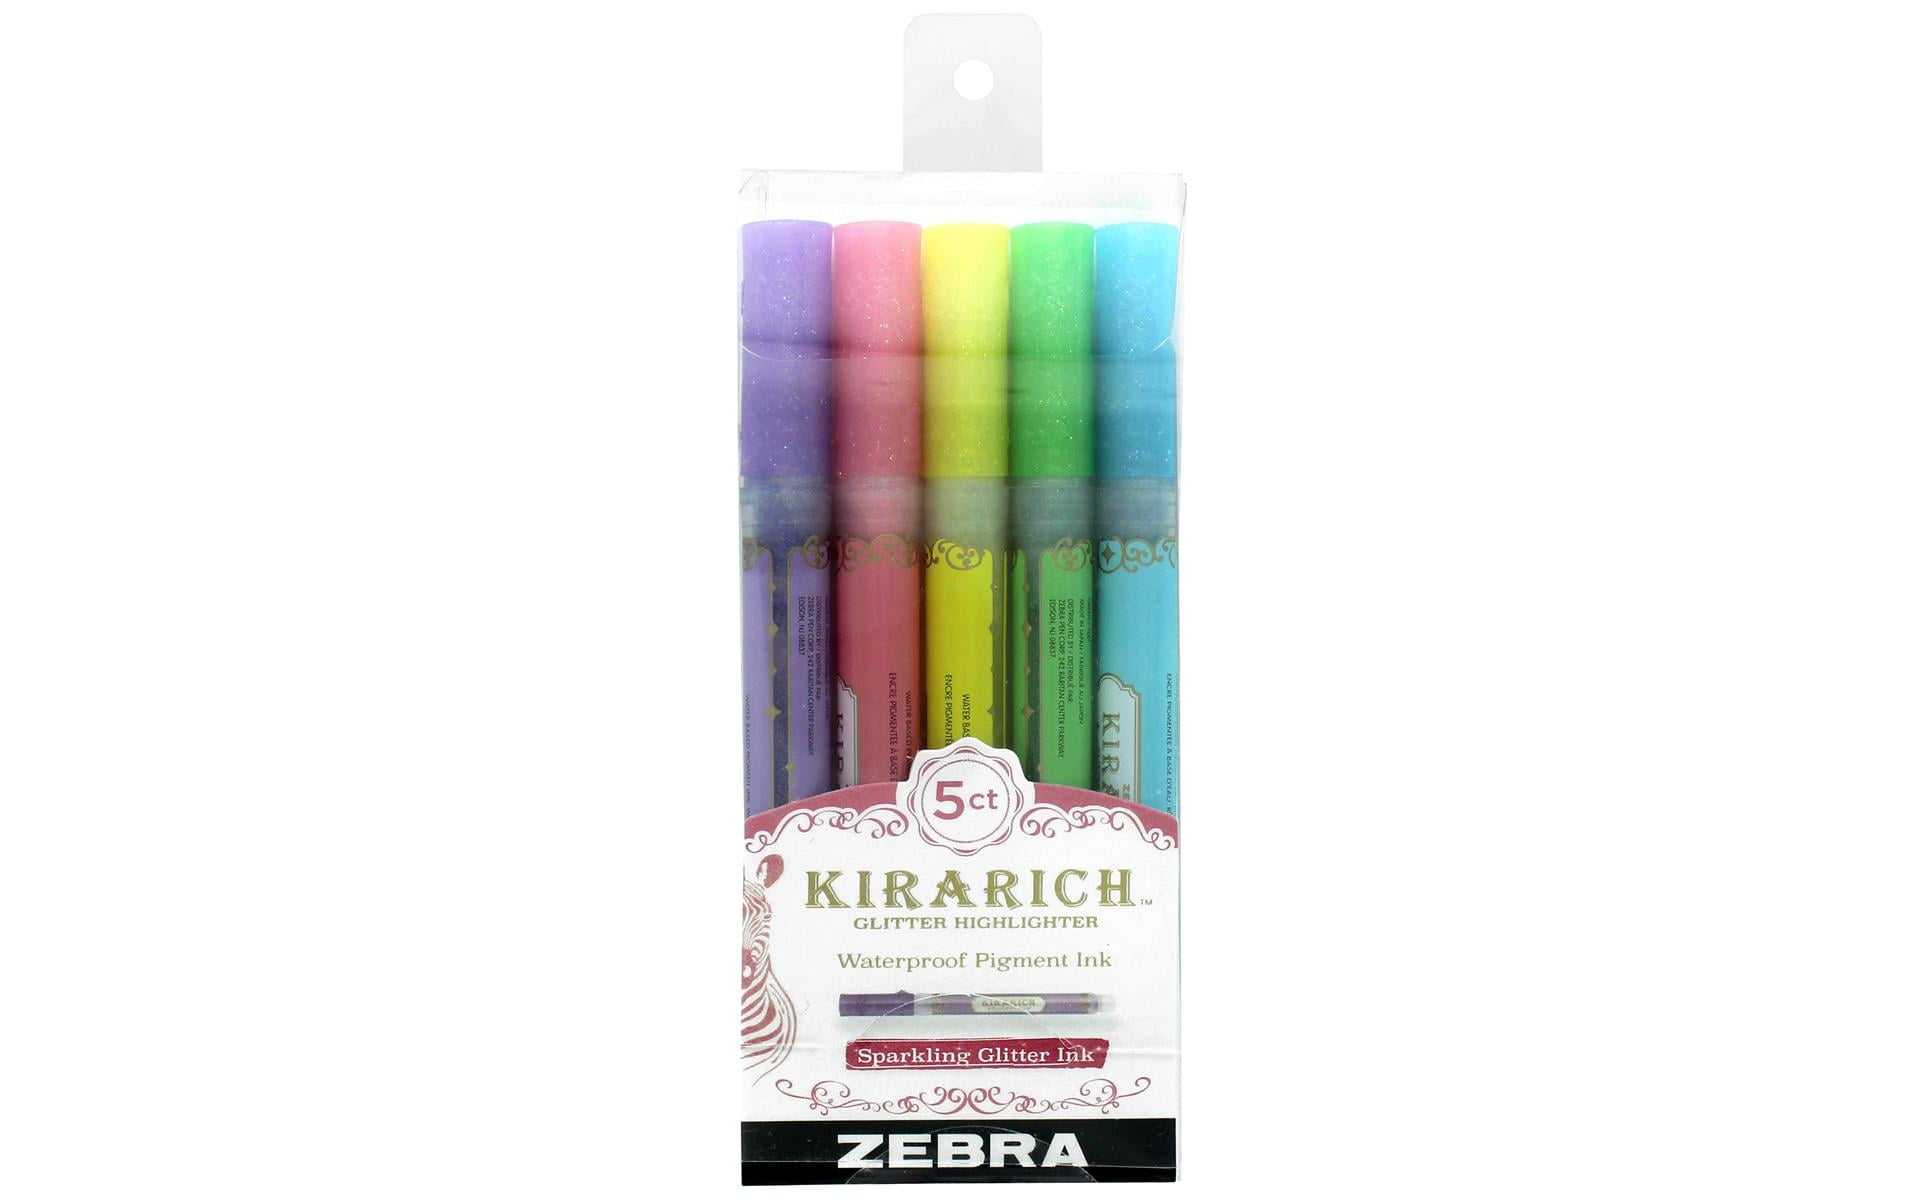 Zebra Kirarich Kira Rich PURPLE GLITTER Highlighter Pearlescent